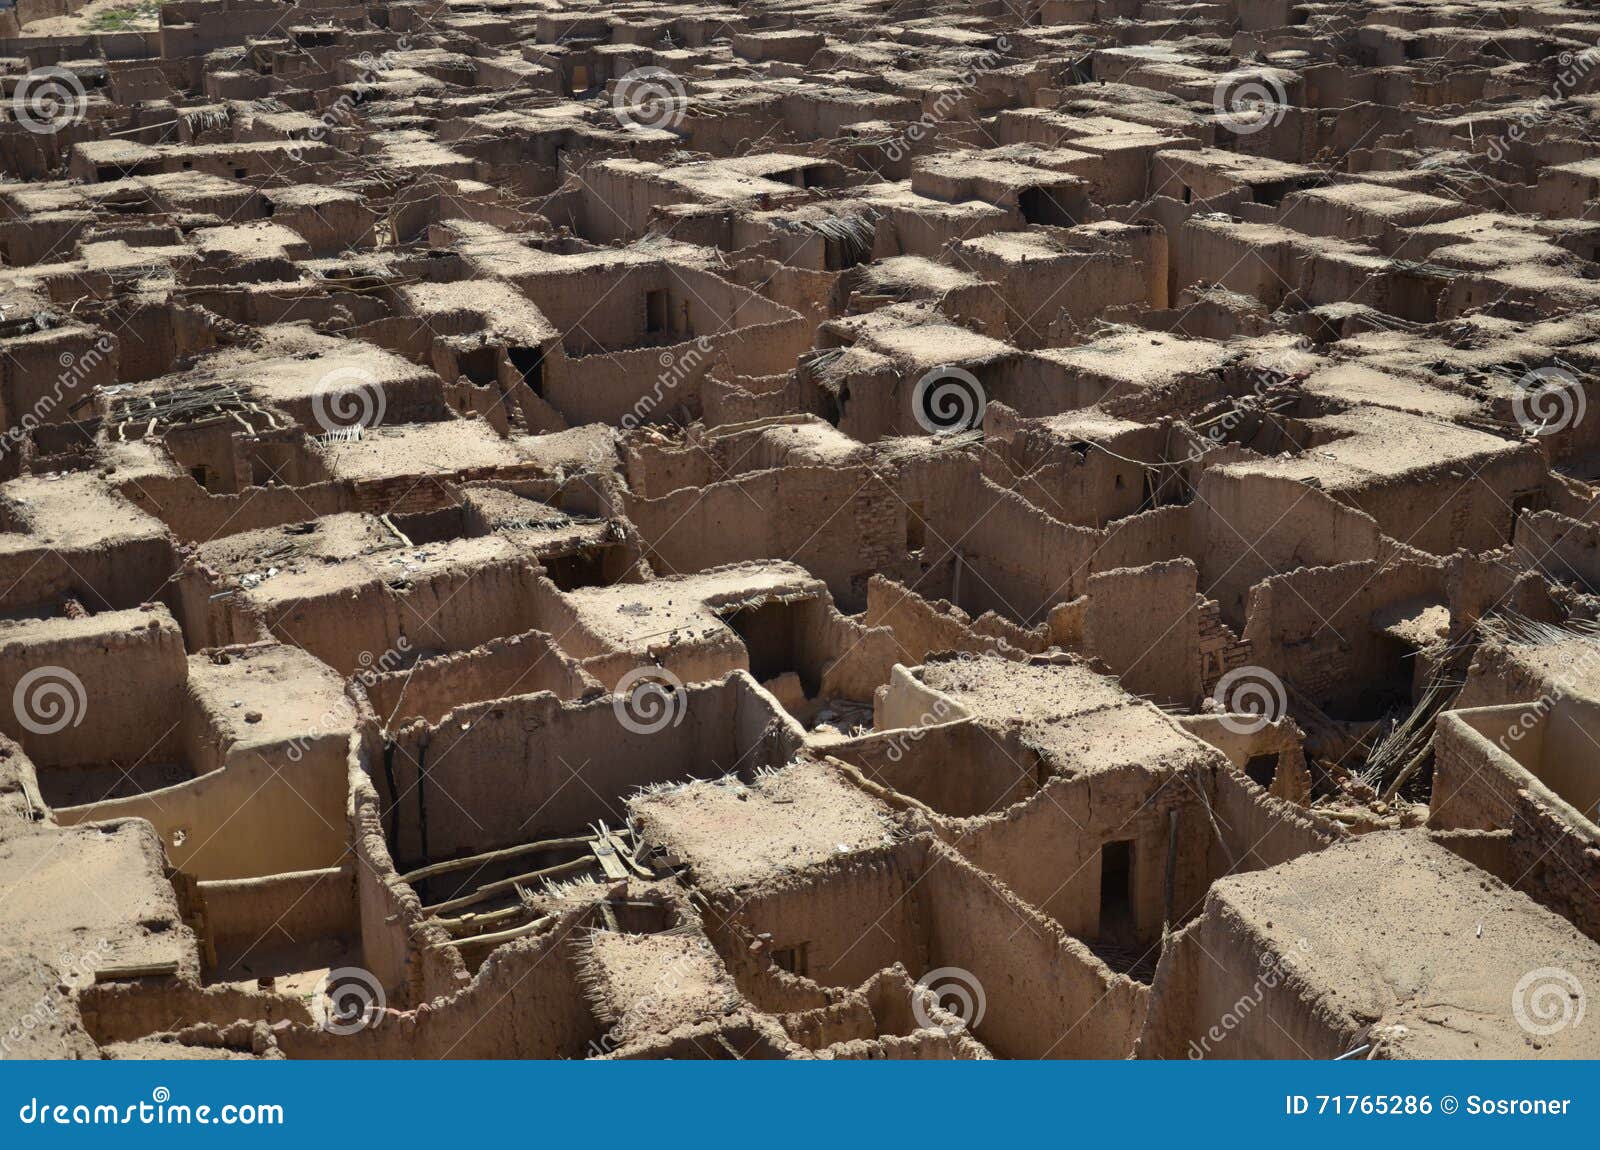 mud houses, al ula, saudi arabia